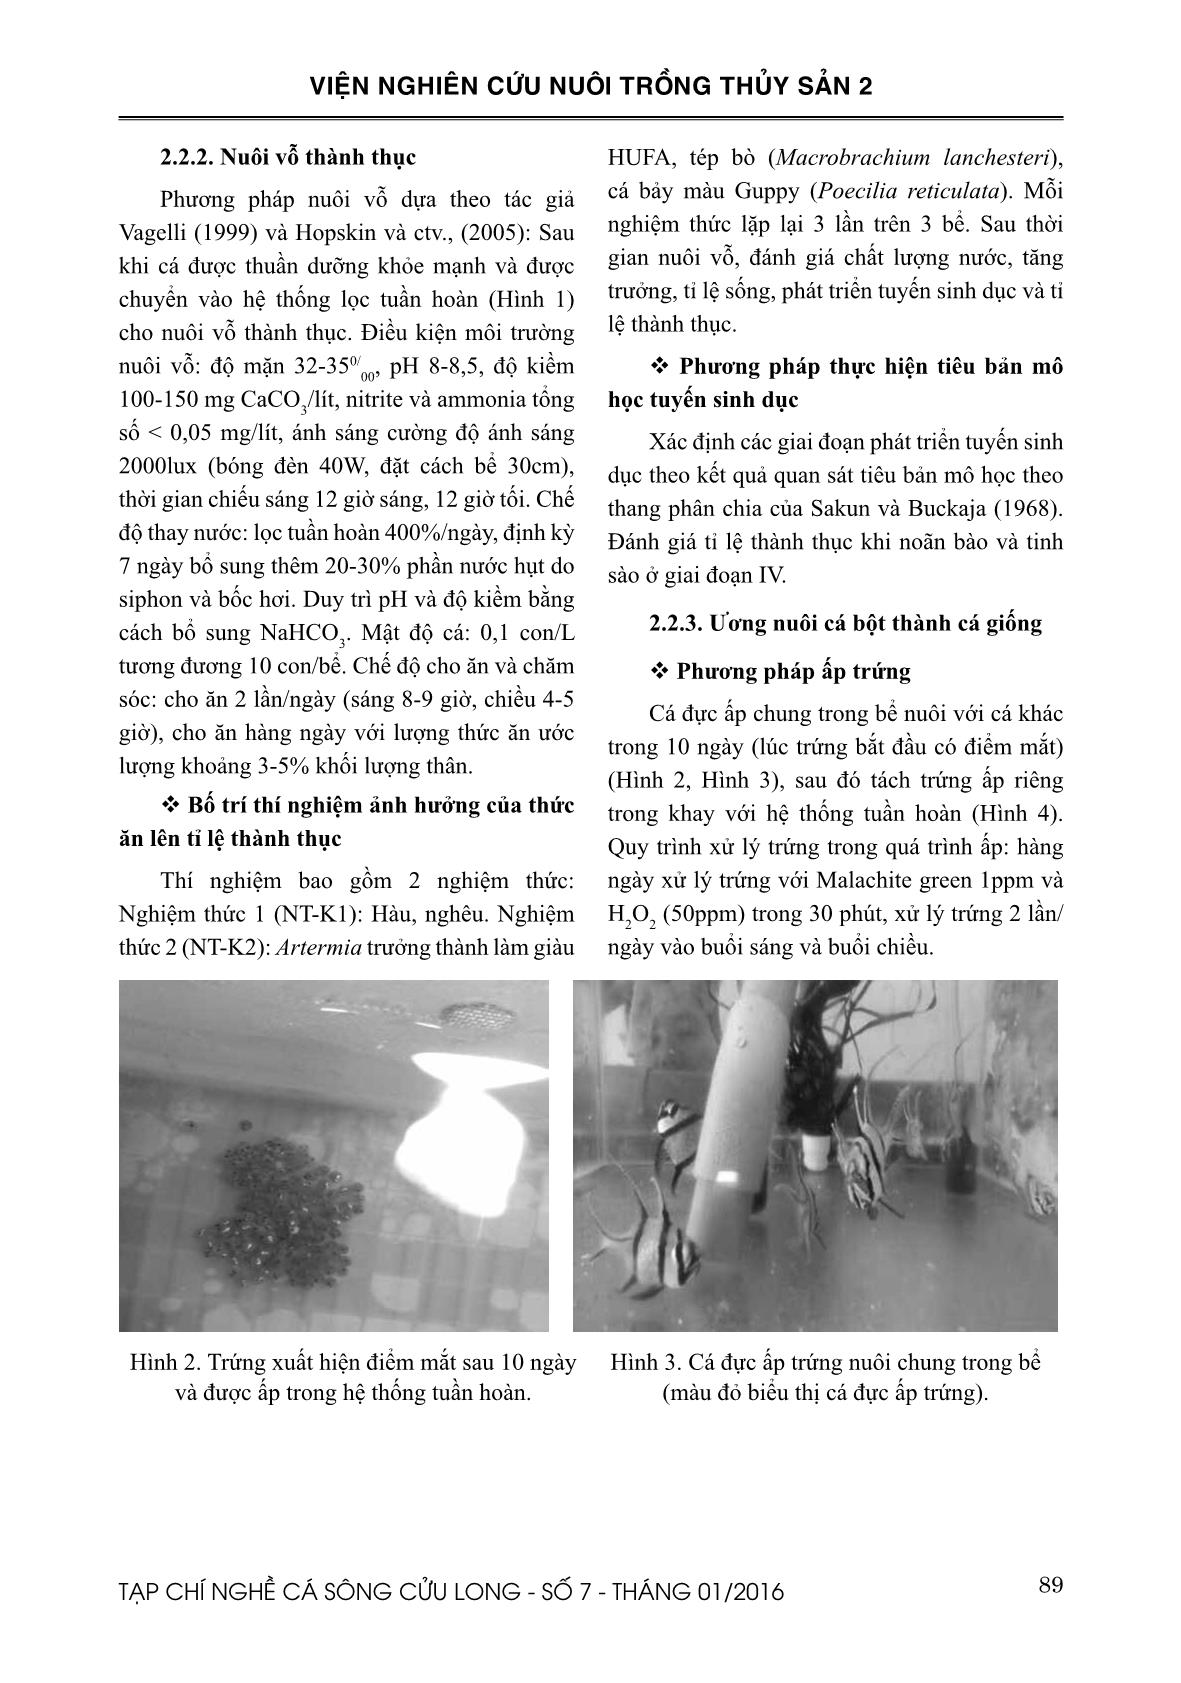 Nghiên cứu sinh sản nhân tạo cá bá chủ (Pterapogon kauderni Kaumans, 1933) tại Việt Nam trang 3